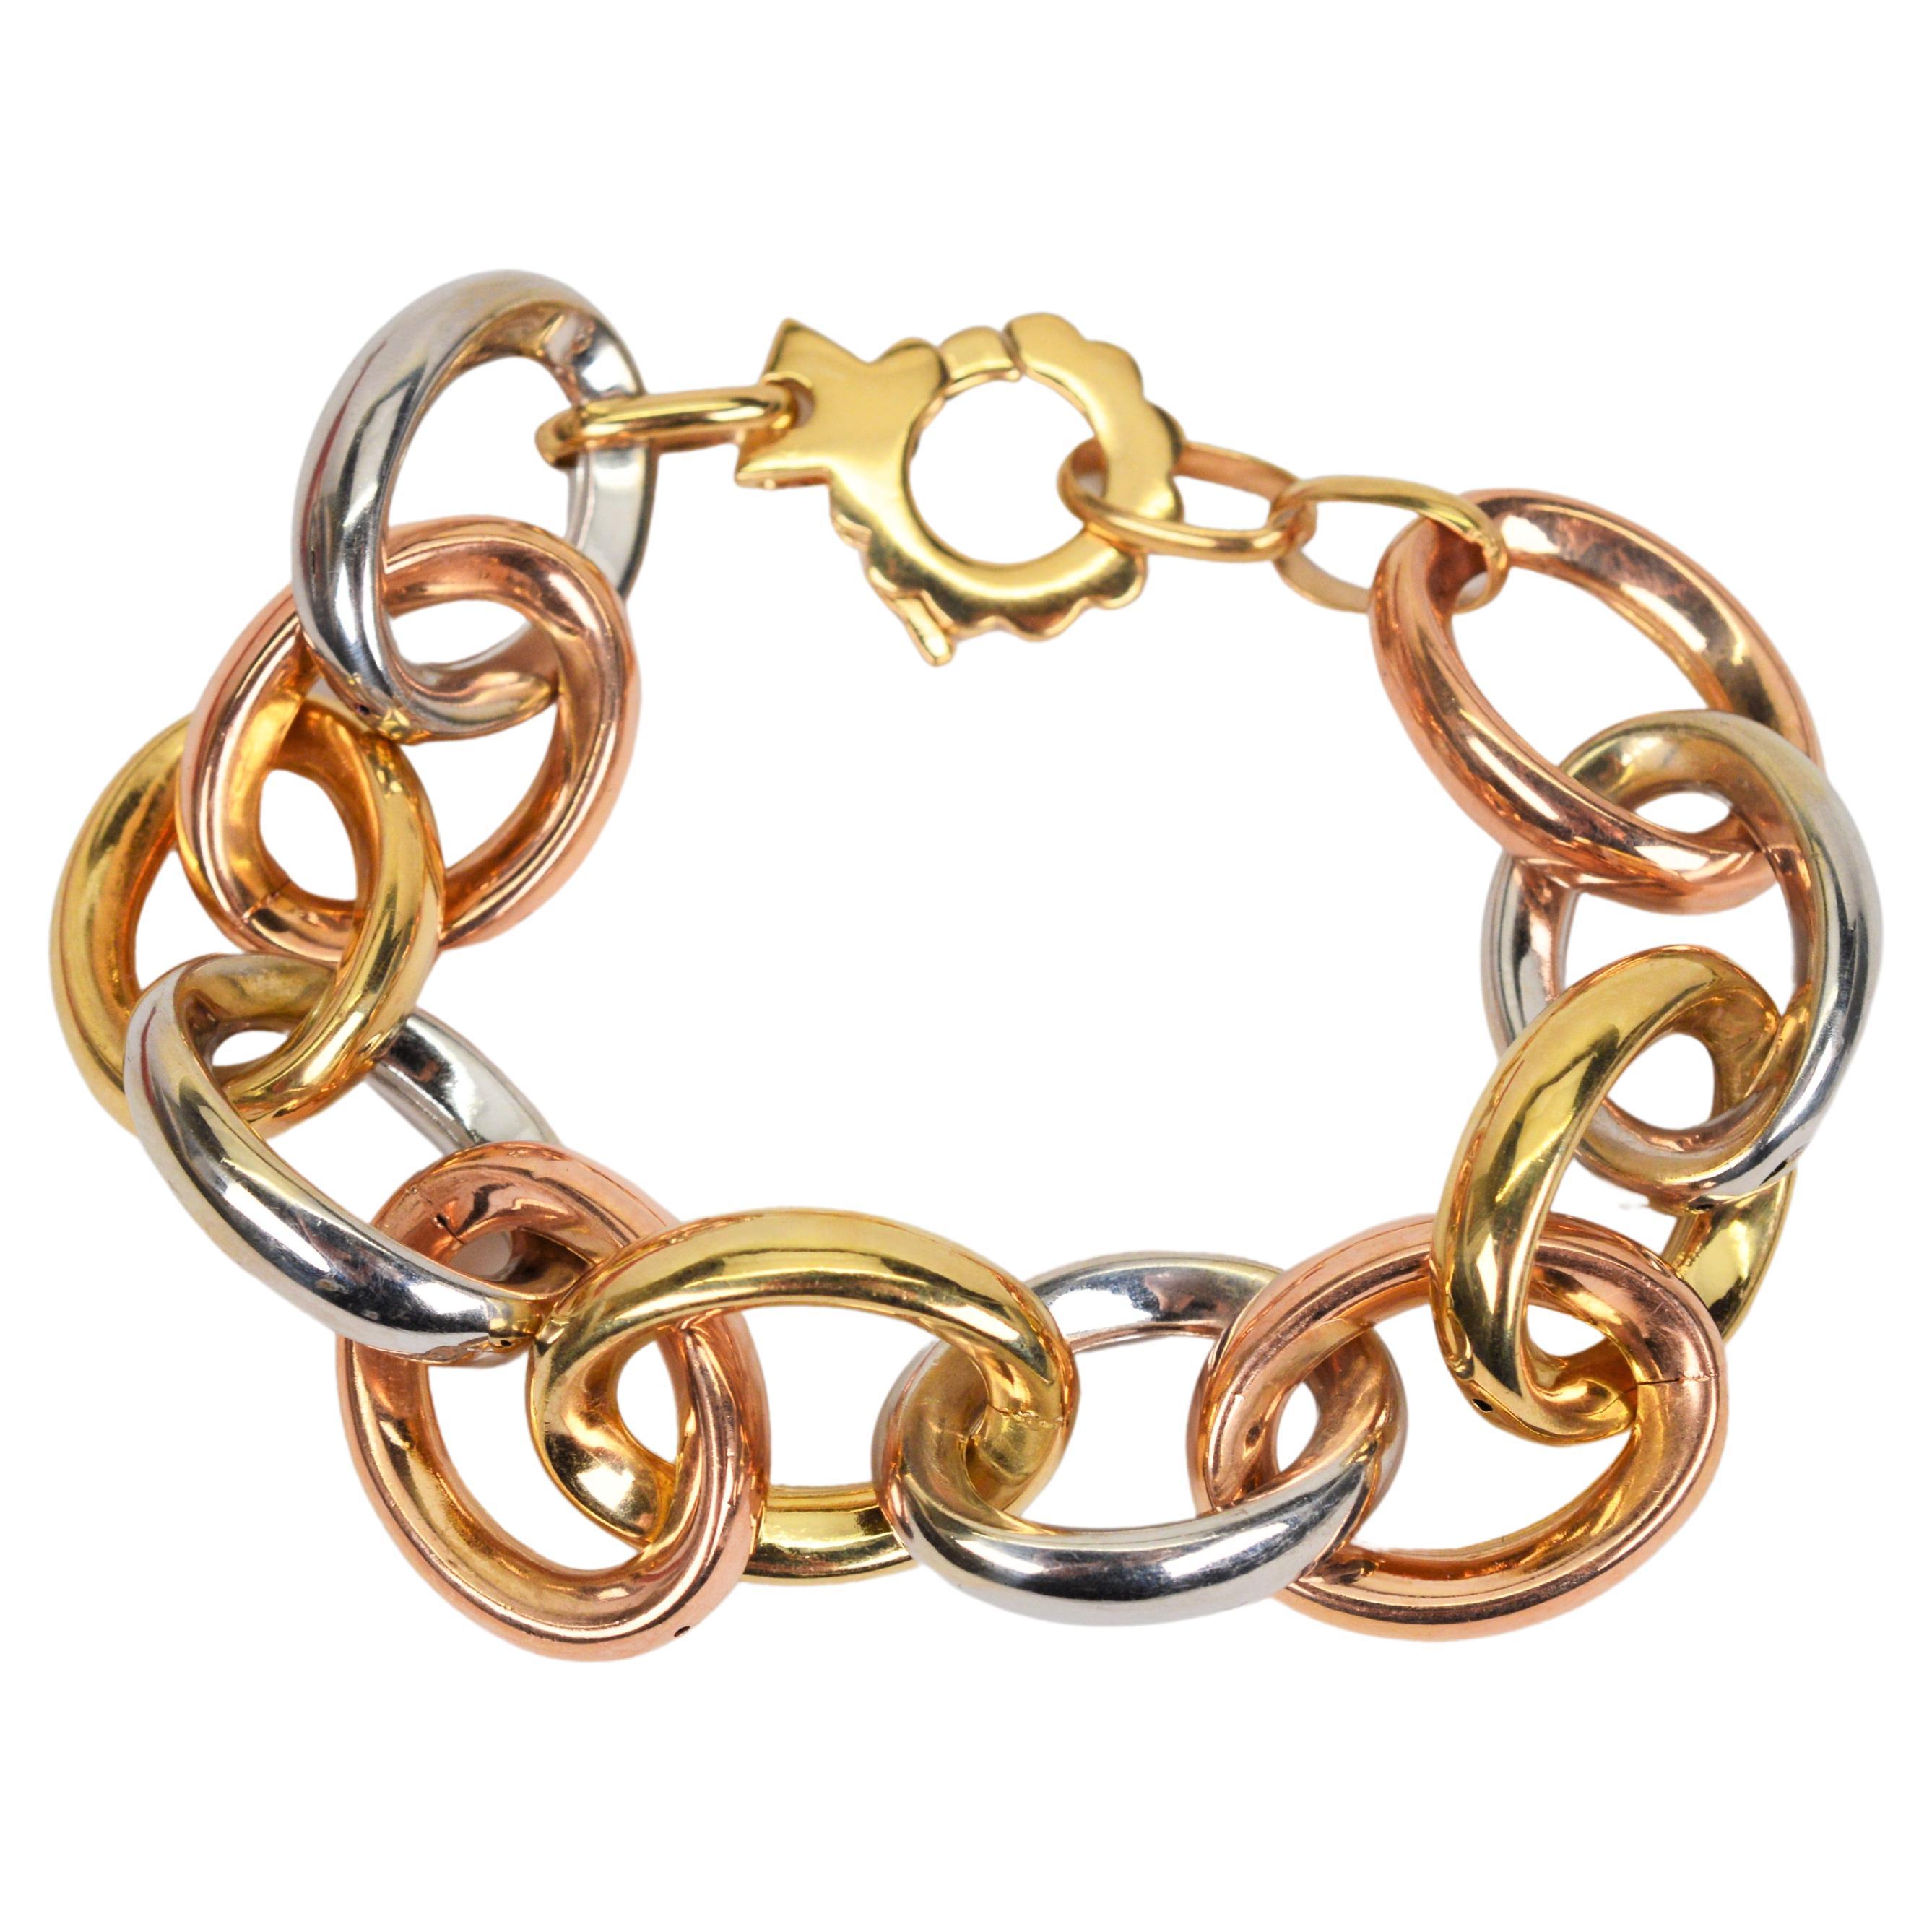 4-Loop Two or Three-Color Interlocking Bracelet